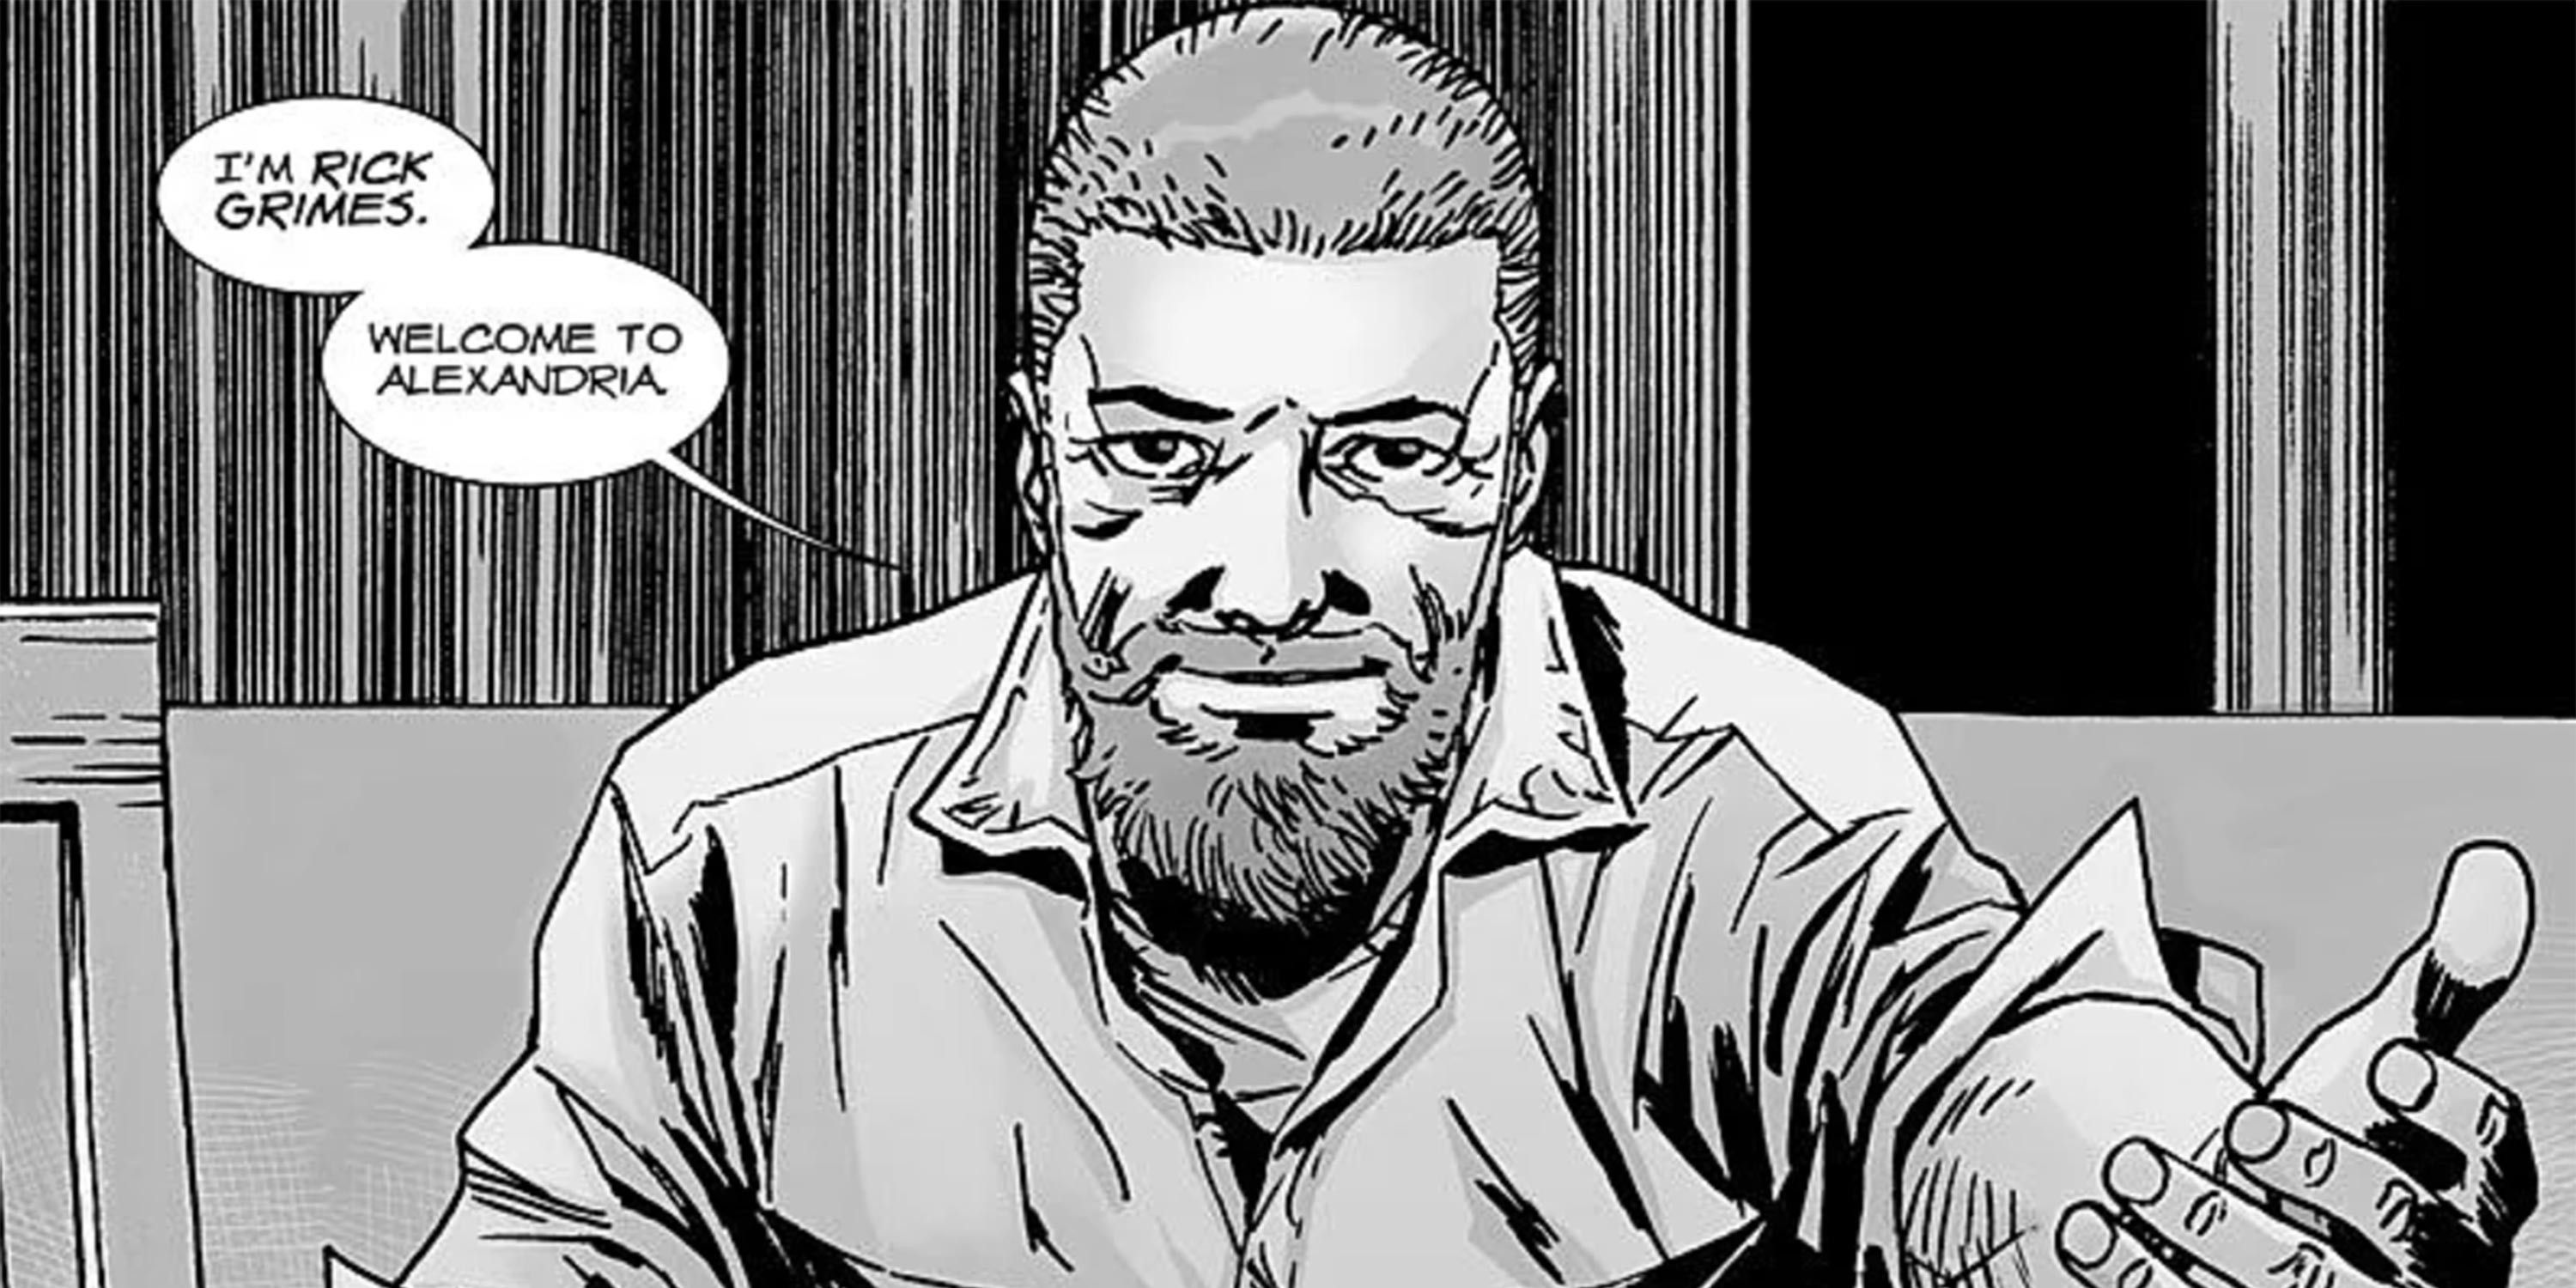 Rick Grimes The Walking Dead comics